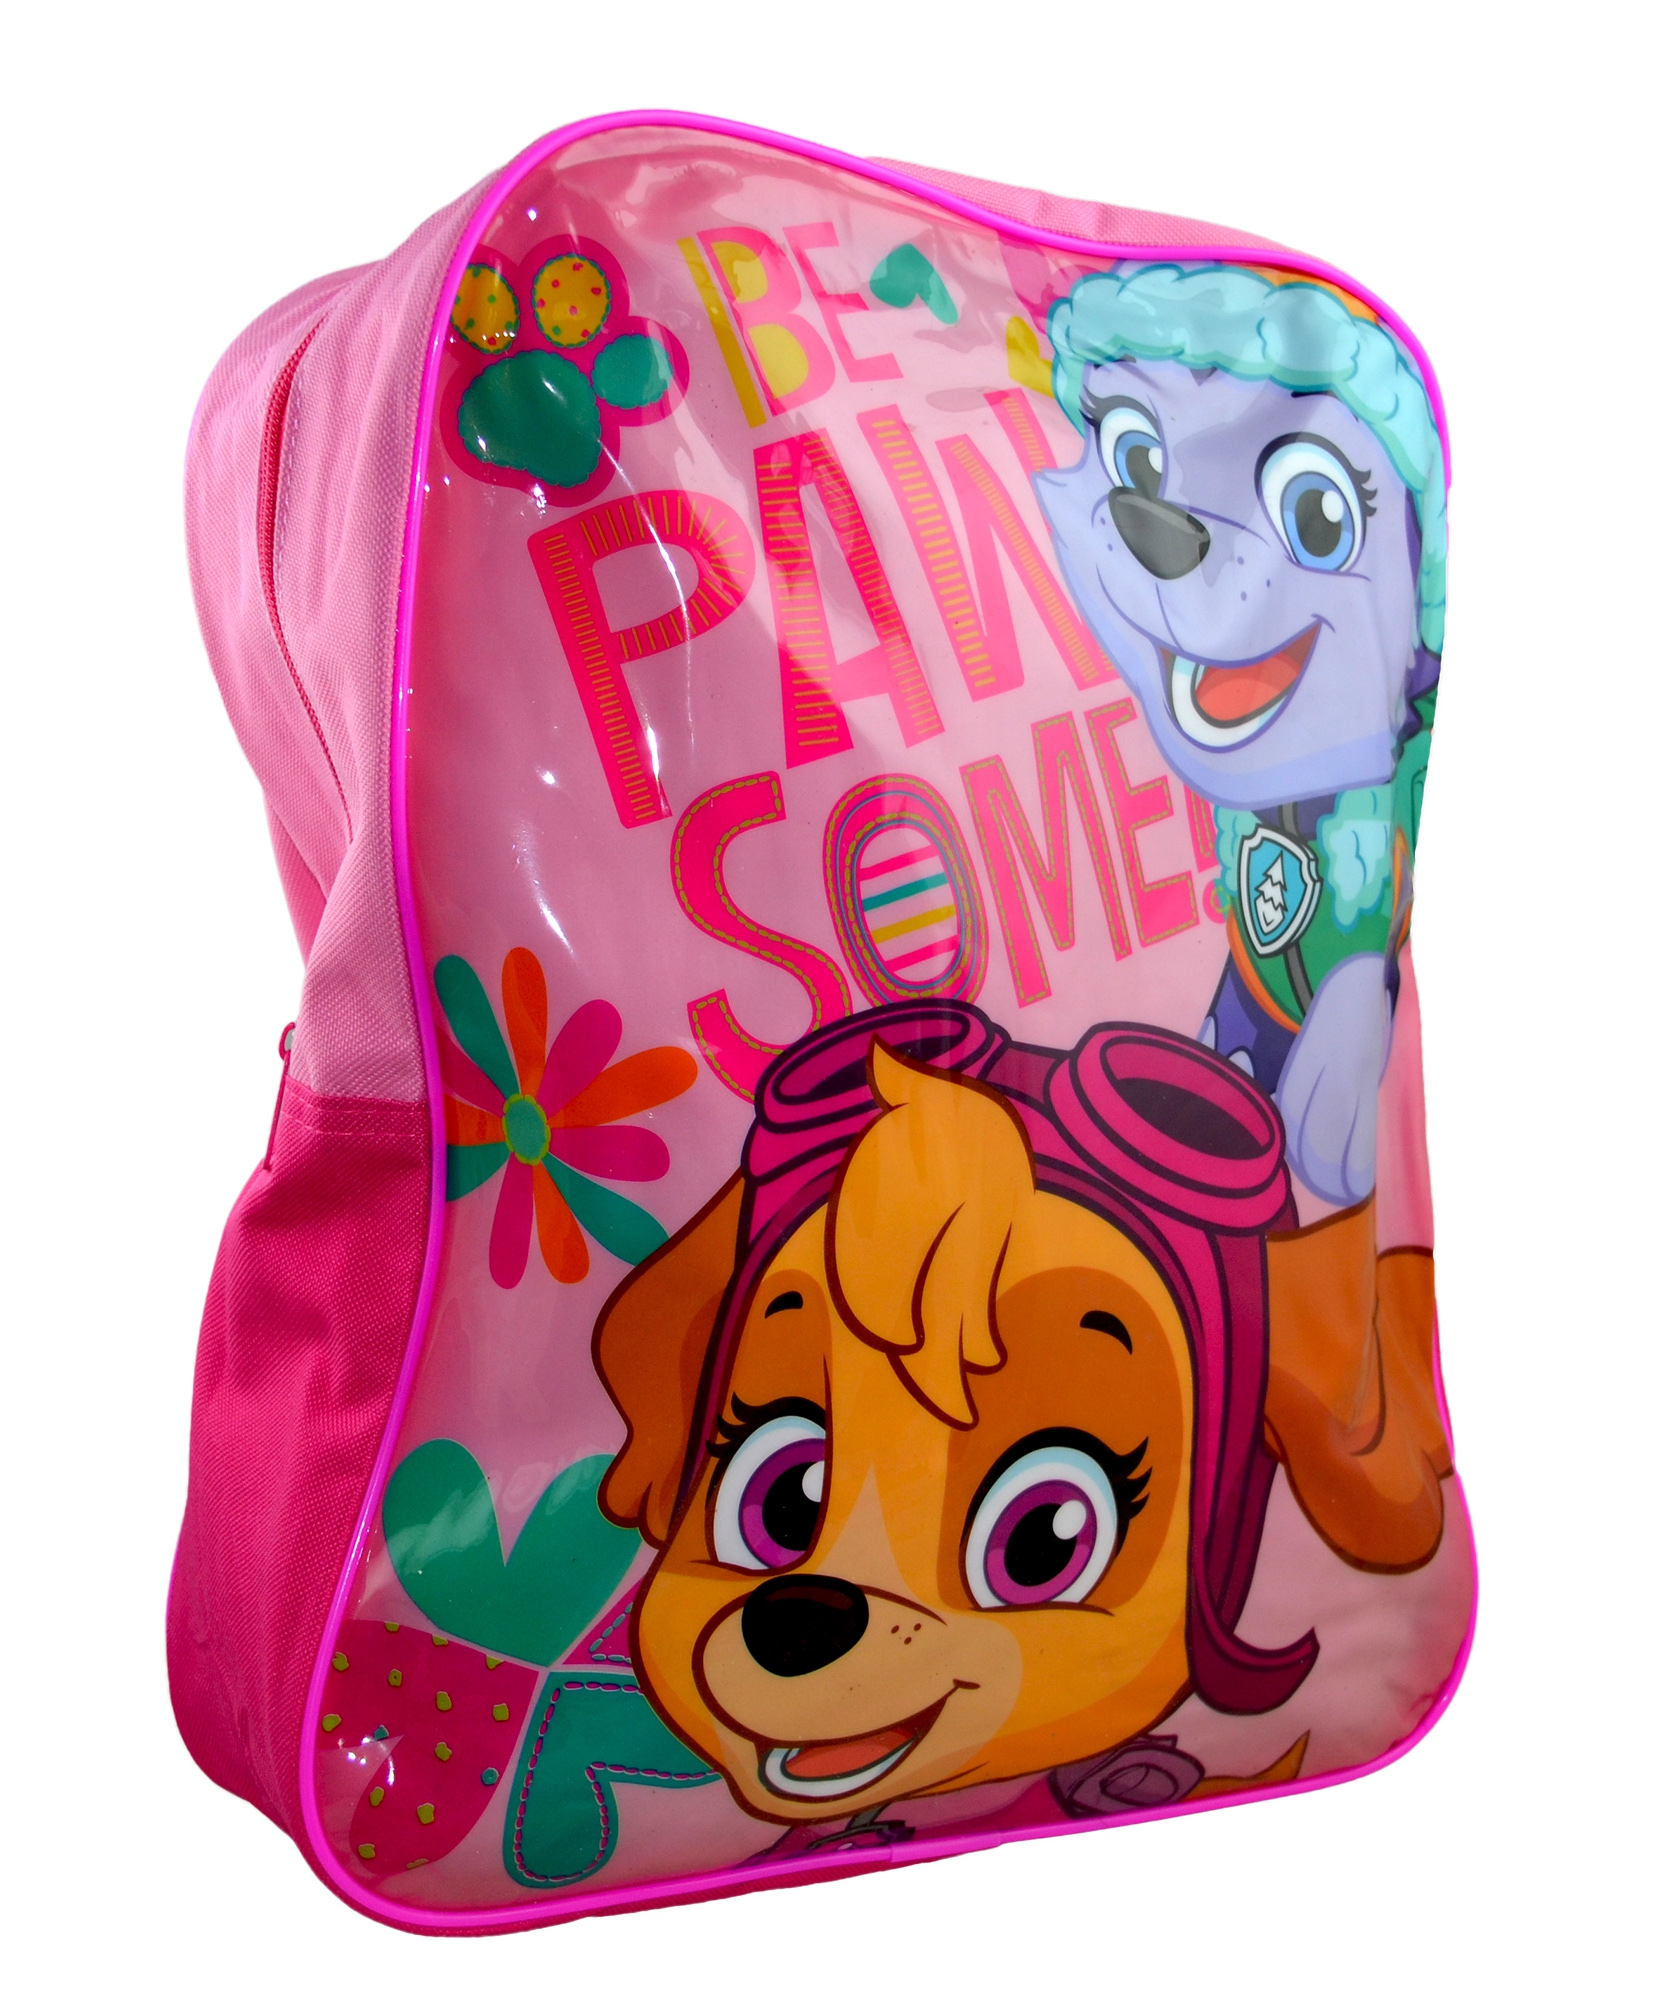 Paw Patrol 'Skye' Arch School Bag Rucksack Backpack